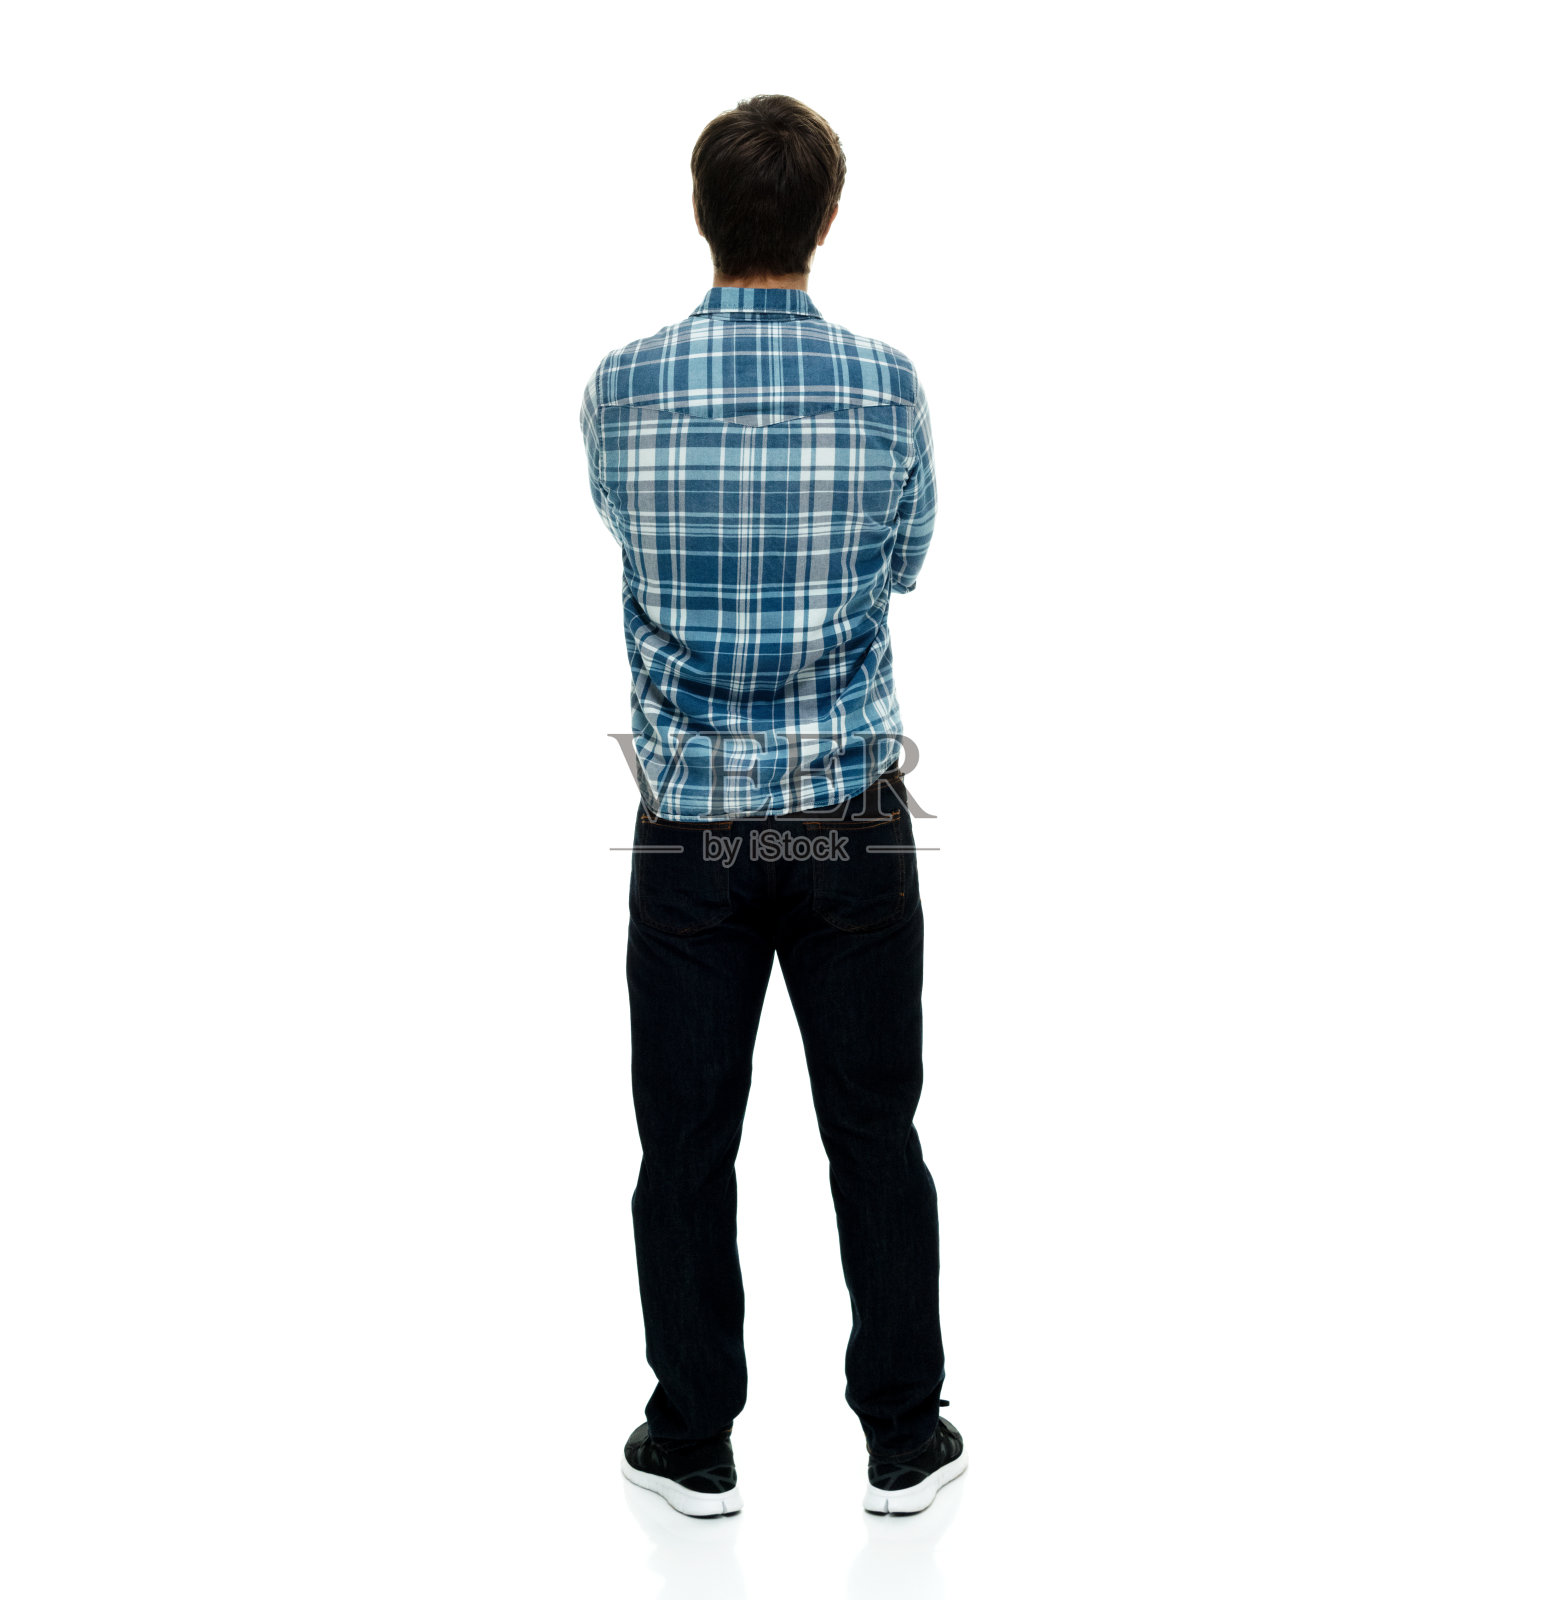 一个随意的男人双手交叉站着的背影照片摄影图片